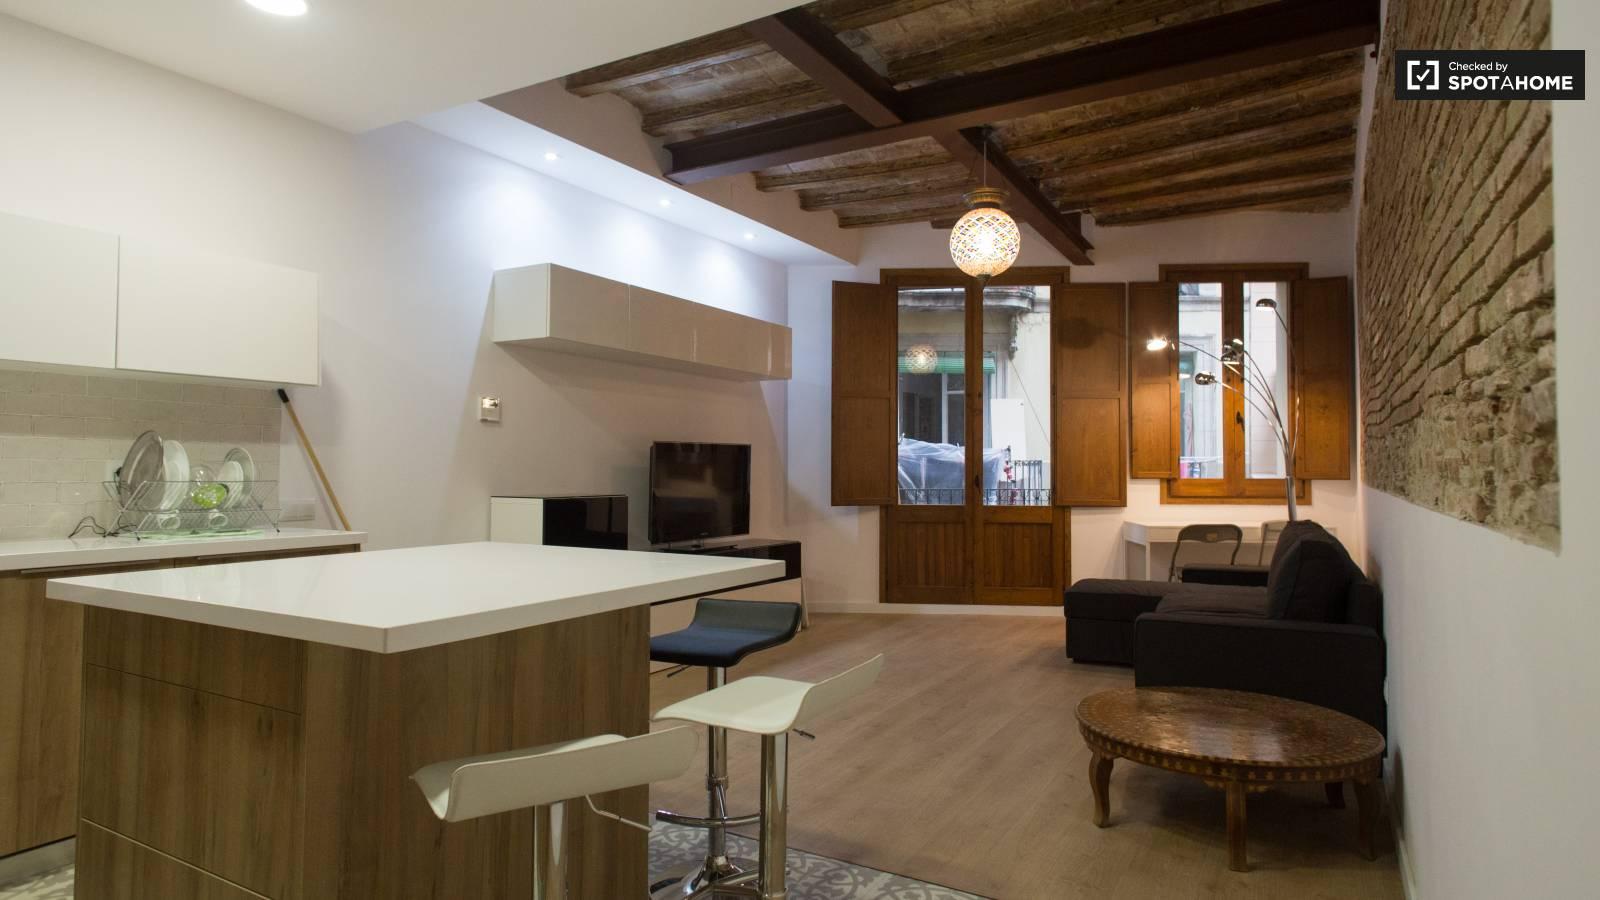 Sala de estar y cocina modernas y unidas en Barcelona